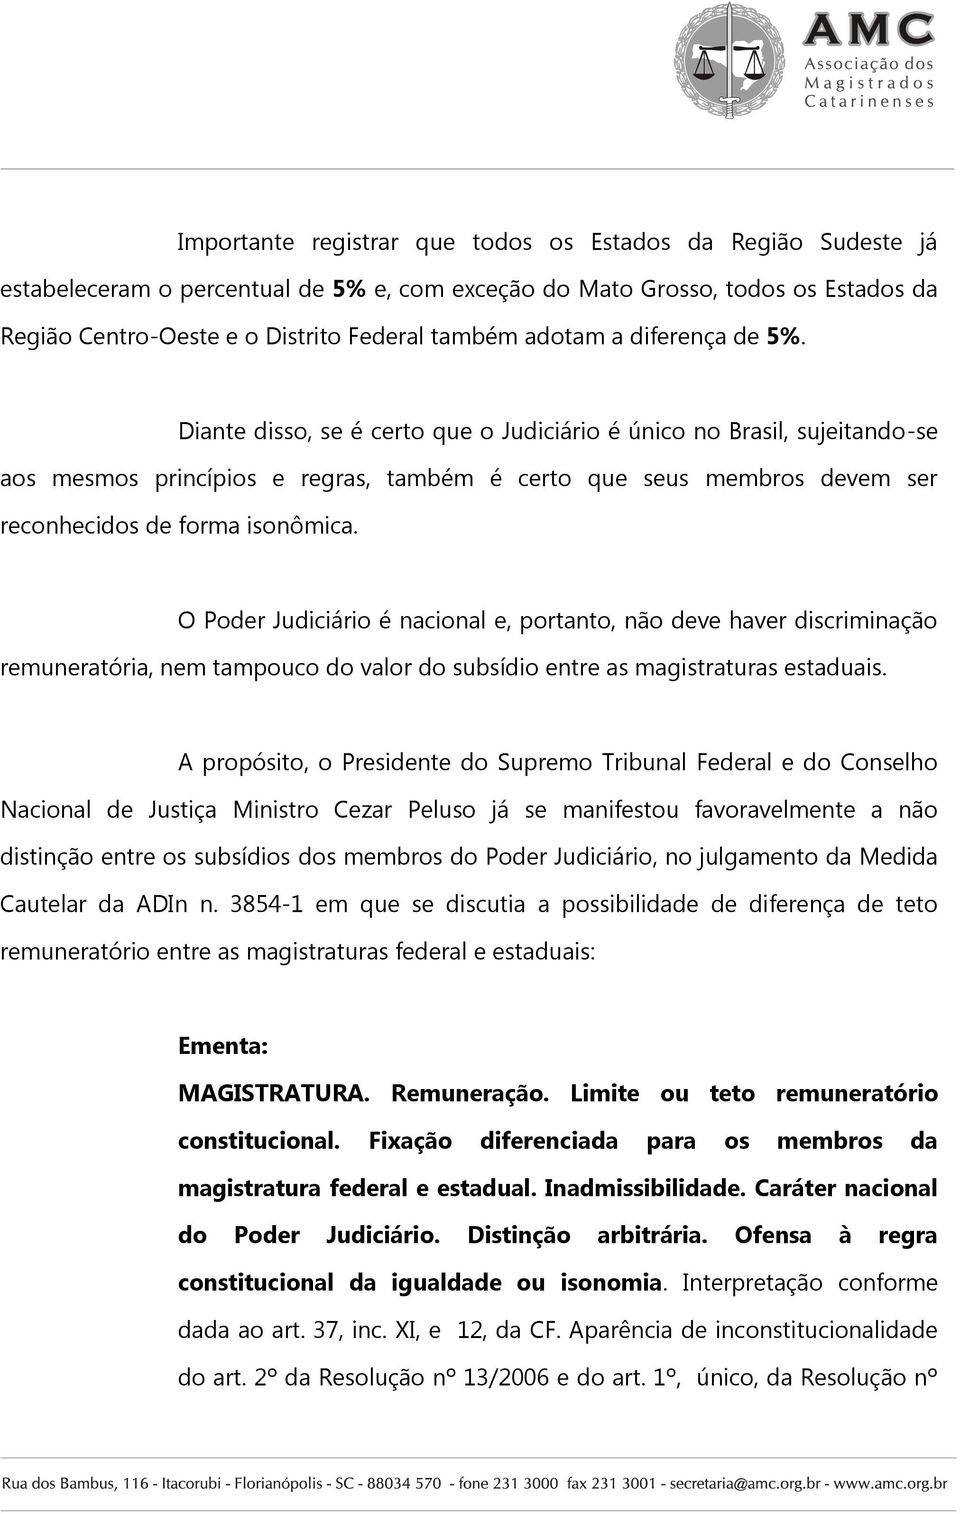 Diante disso, se é certo que o Judiciário é único no Brasil, sujeitando-se aos mesmos princípios e regras, também é certo que seus membros devem ser reconhecidos de forma isonômica.